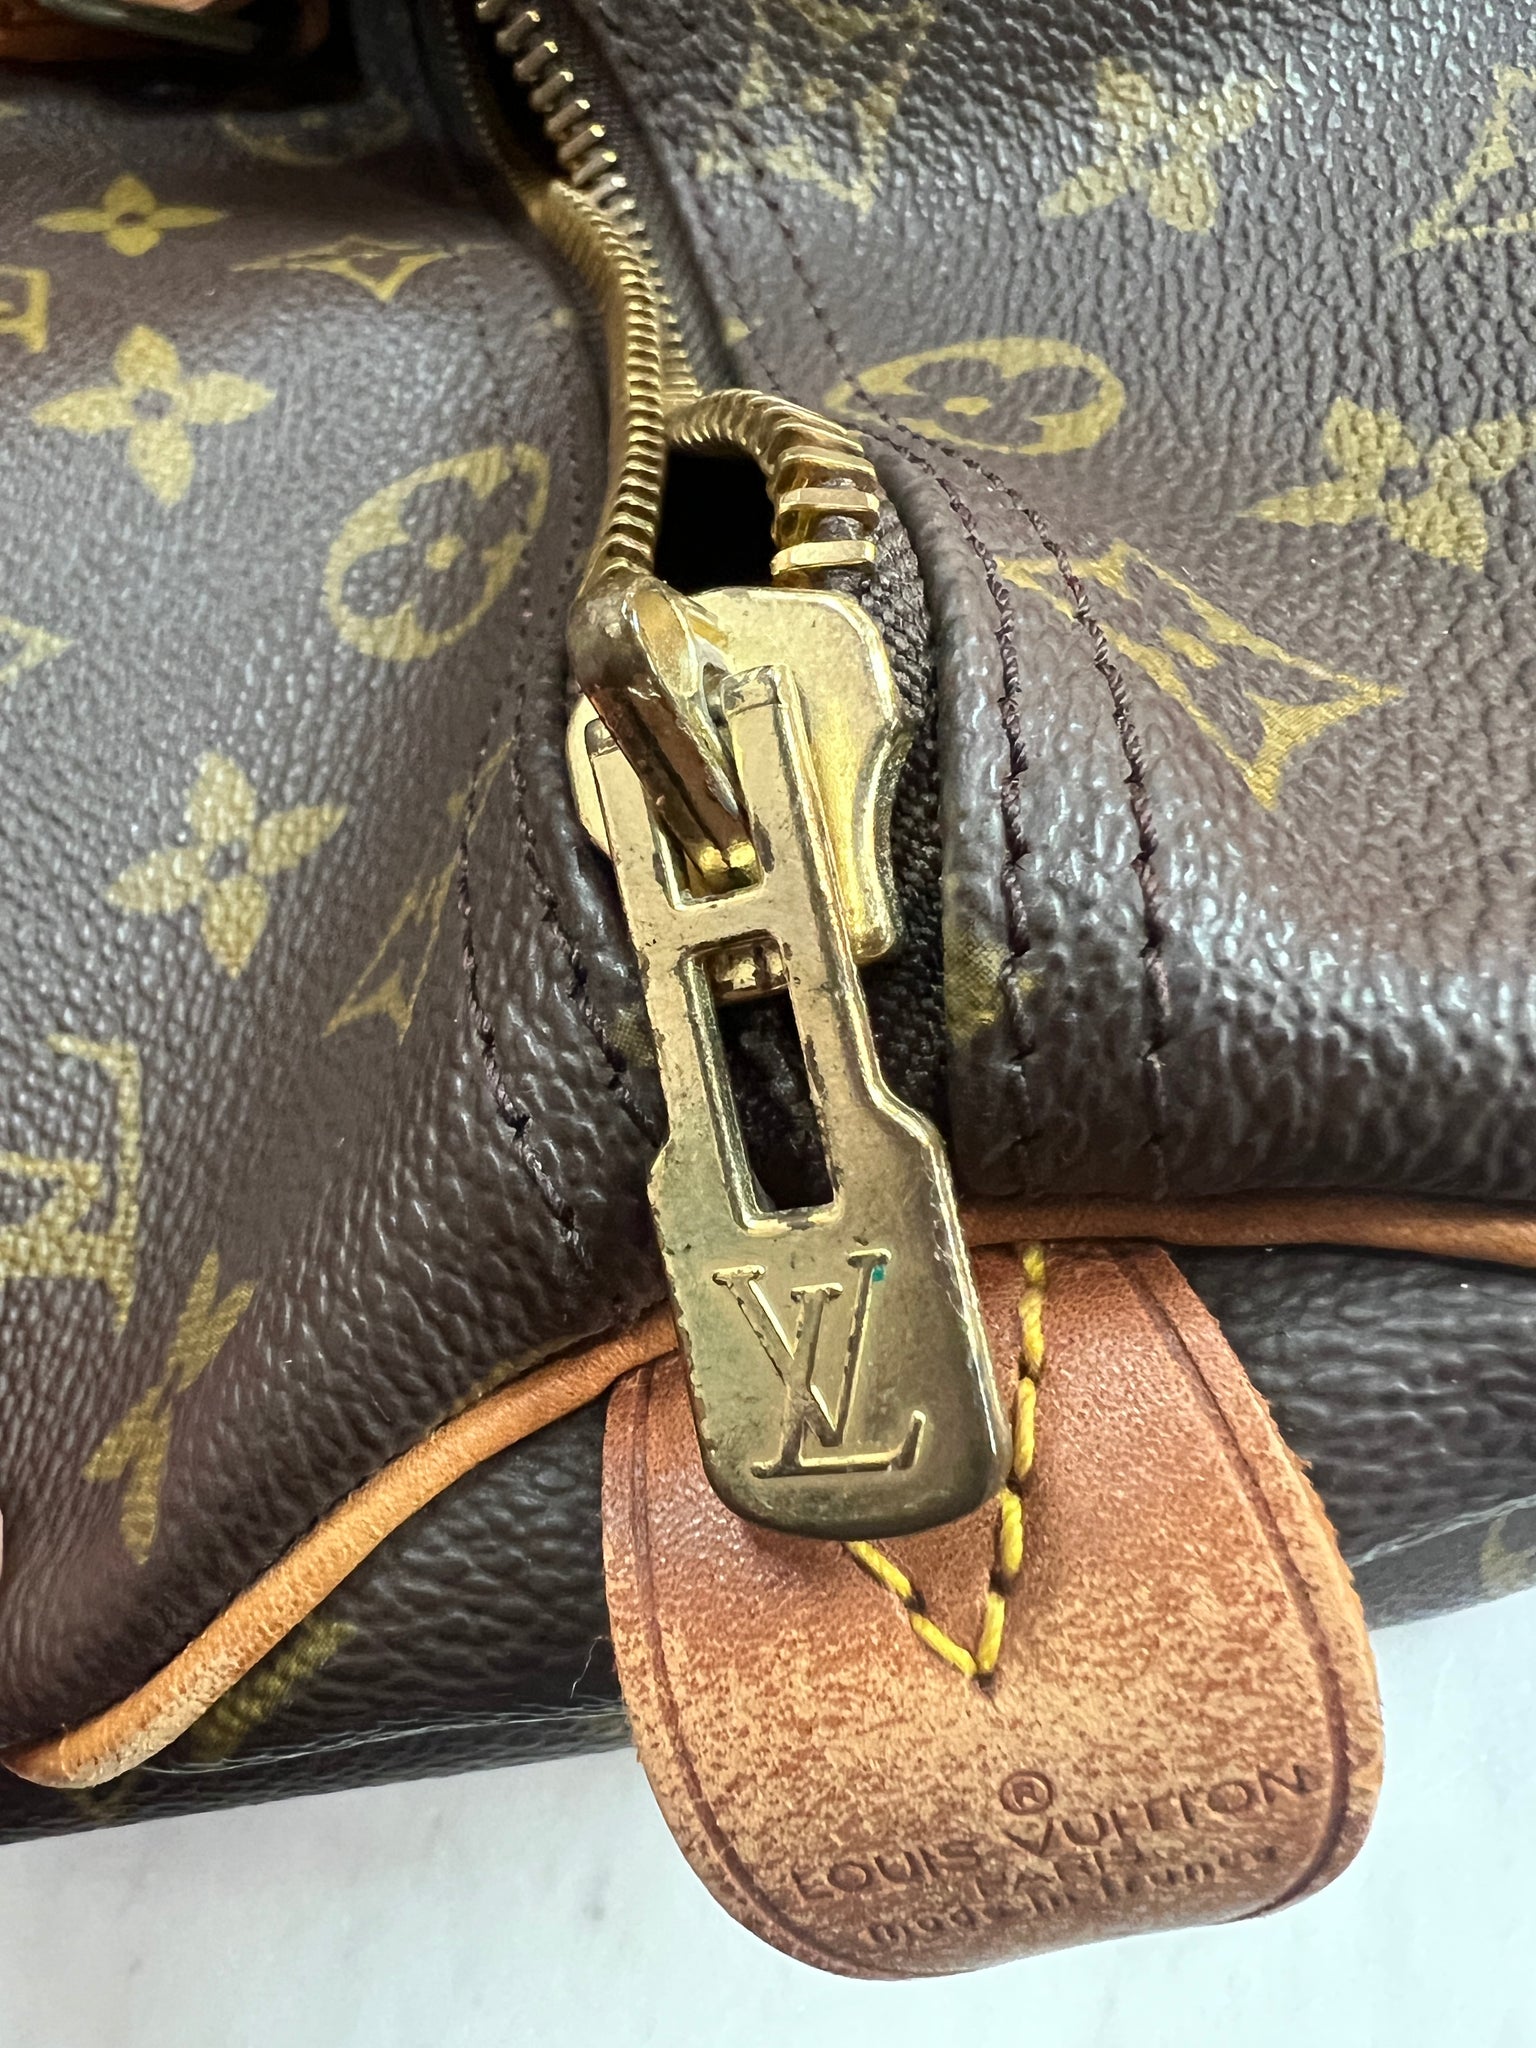 Louis Vuitton 'speedy' Travel Bag in Brown